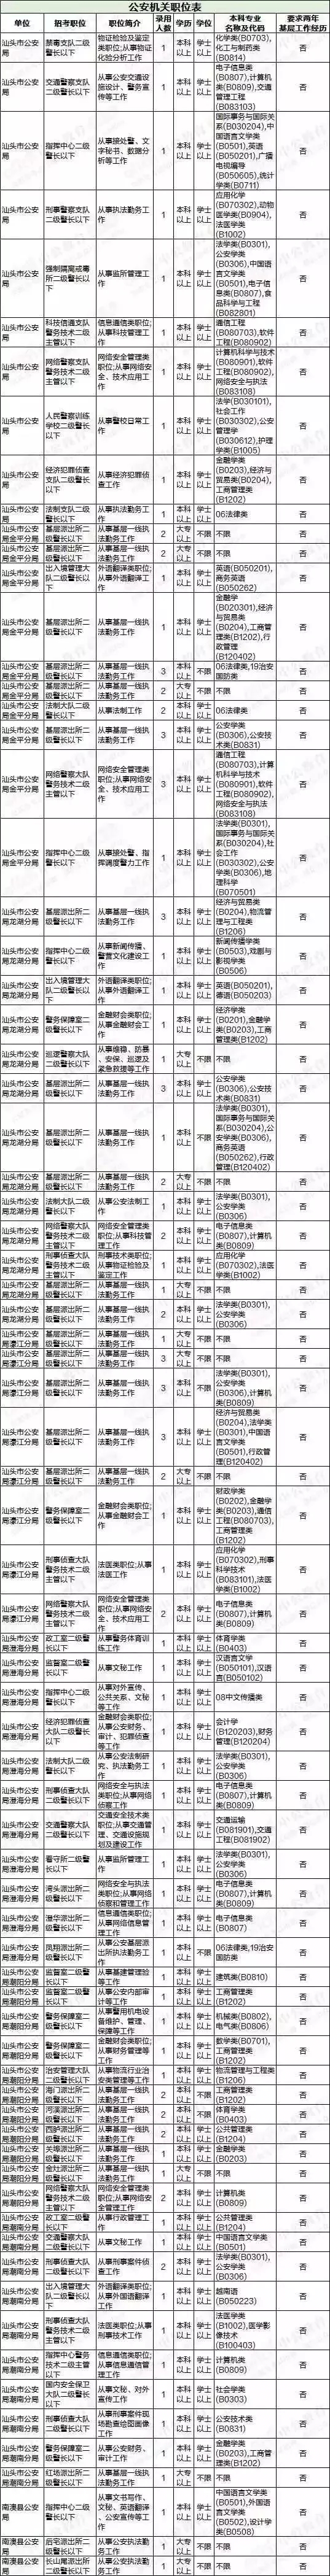 2019年广东省公务员考试汕头招录职位表